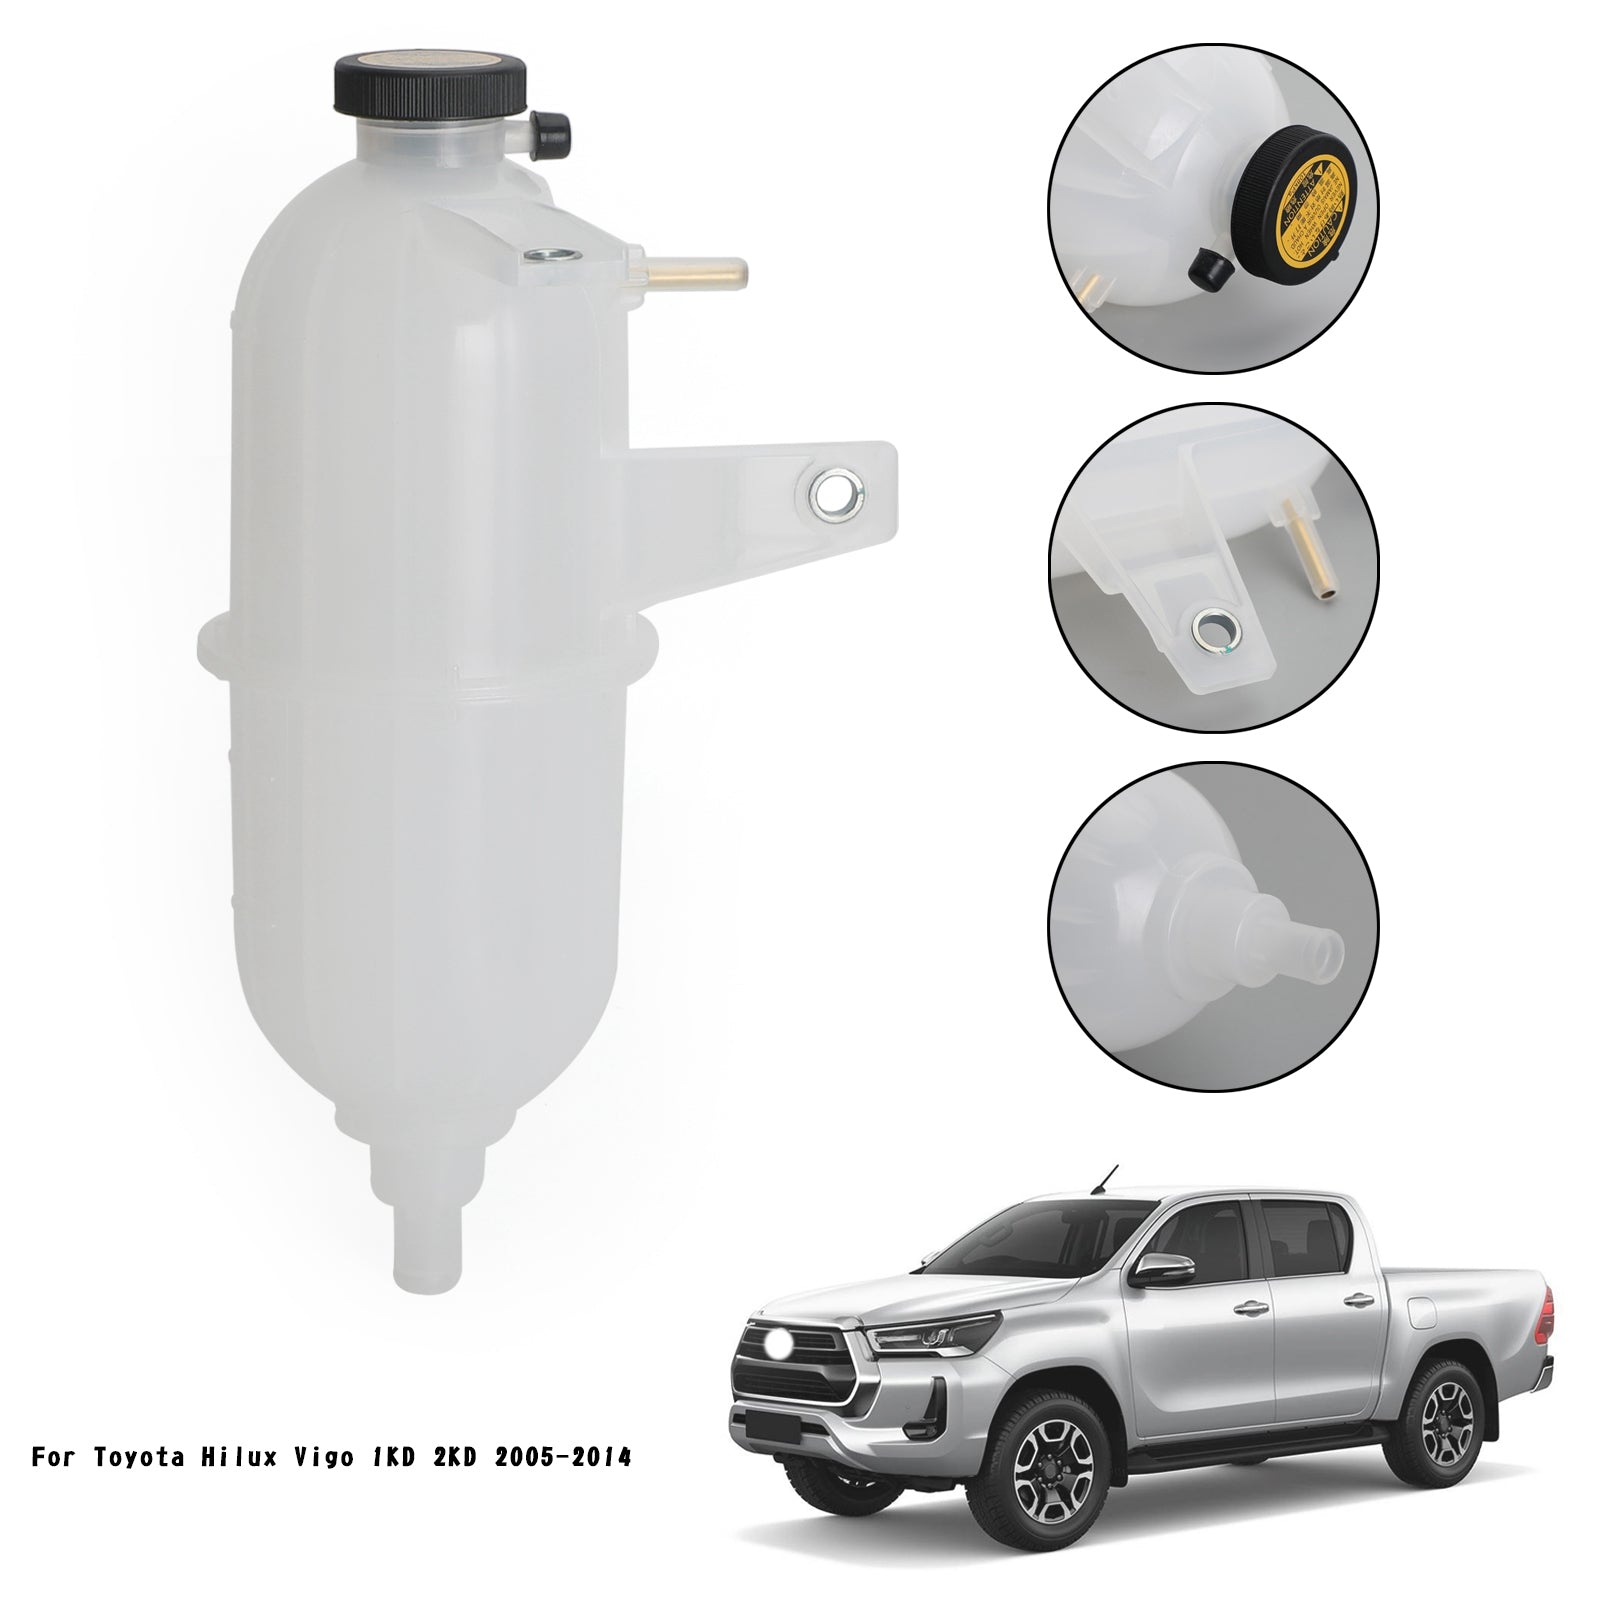 Depósito de refrigerante de botella de desbordamiento de radiador para camioneta genérica Toyota Hilux Vigo 2KD 2005-14